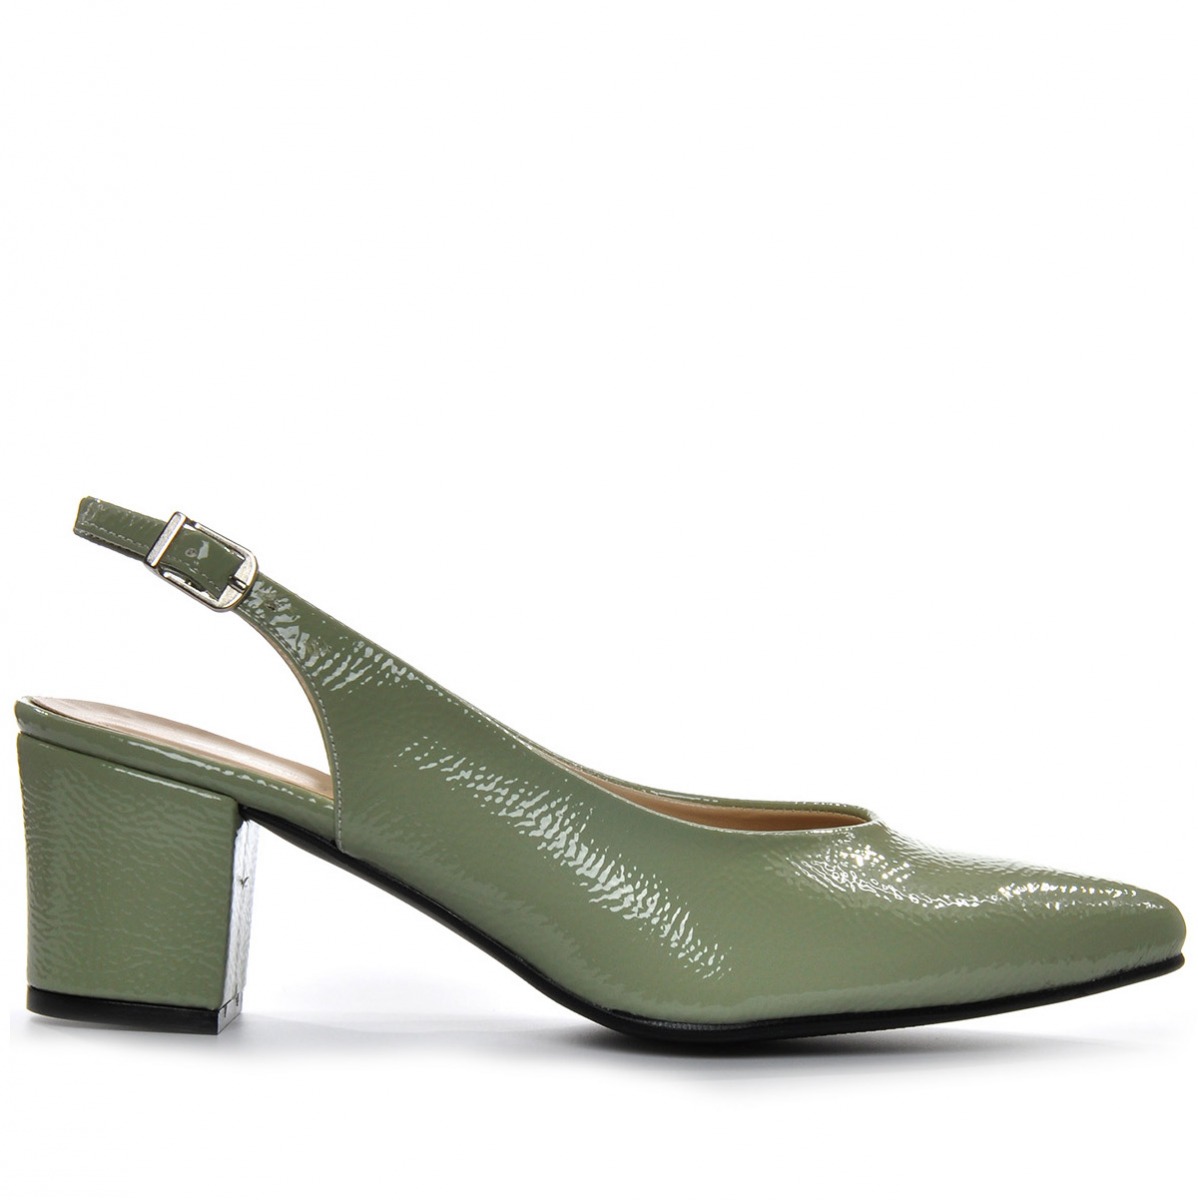 Flo Kadın  Yeşil Klasik Topuklu Ayakkabı VZN-233Y. 2